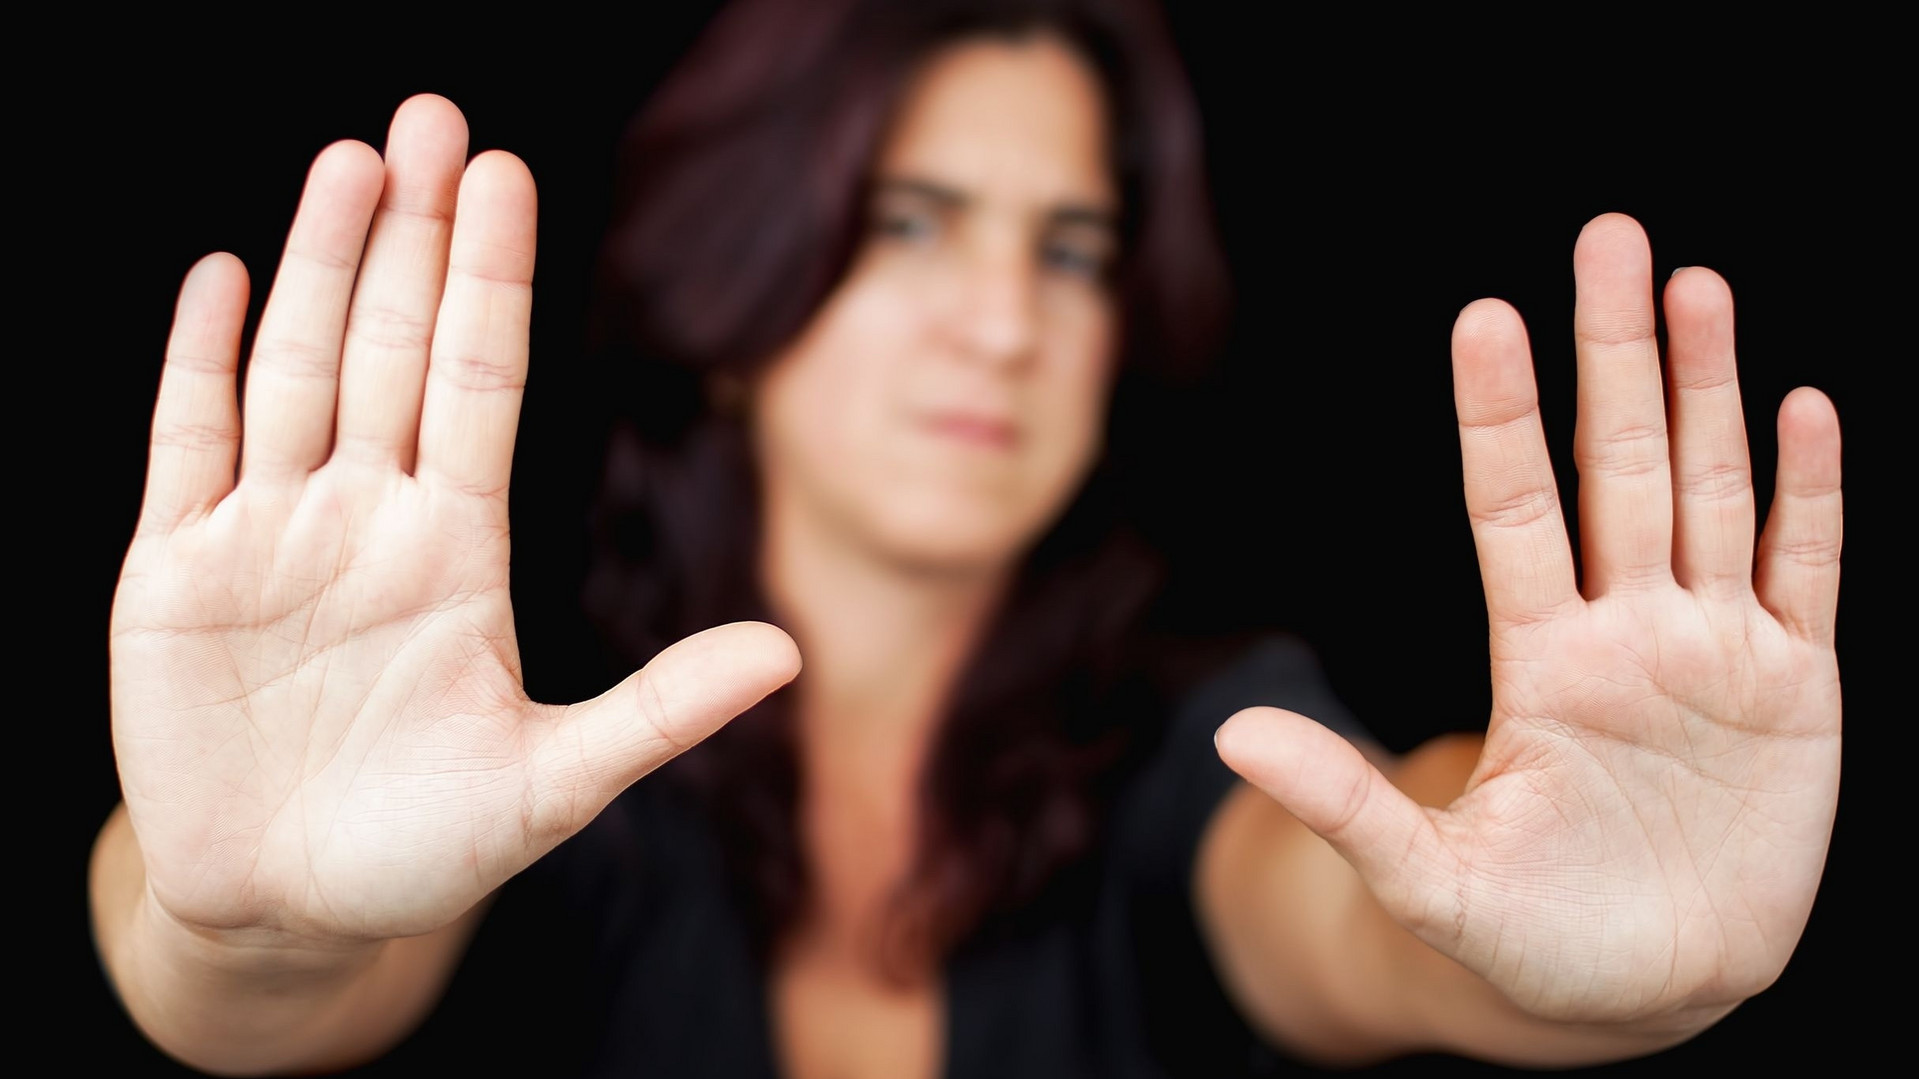 Symbolbild RIGG: eine Frau mit ausgesteckten Armen und erhobenen Händen: "Halt, stopp!"